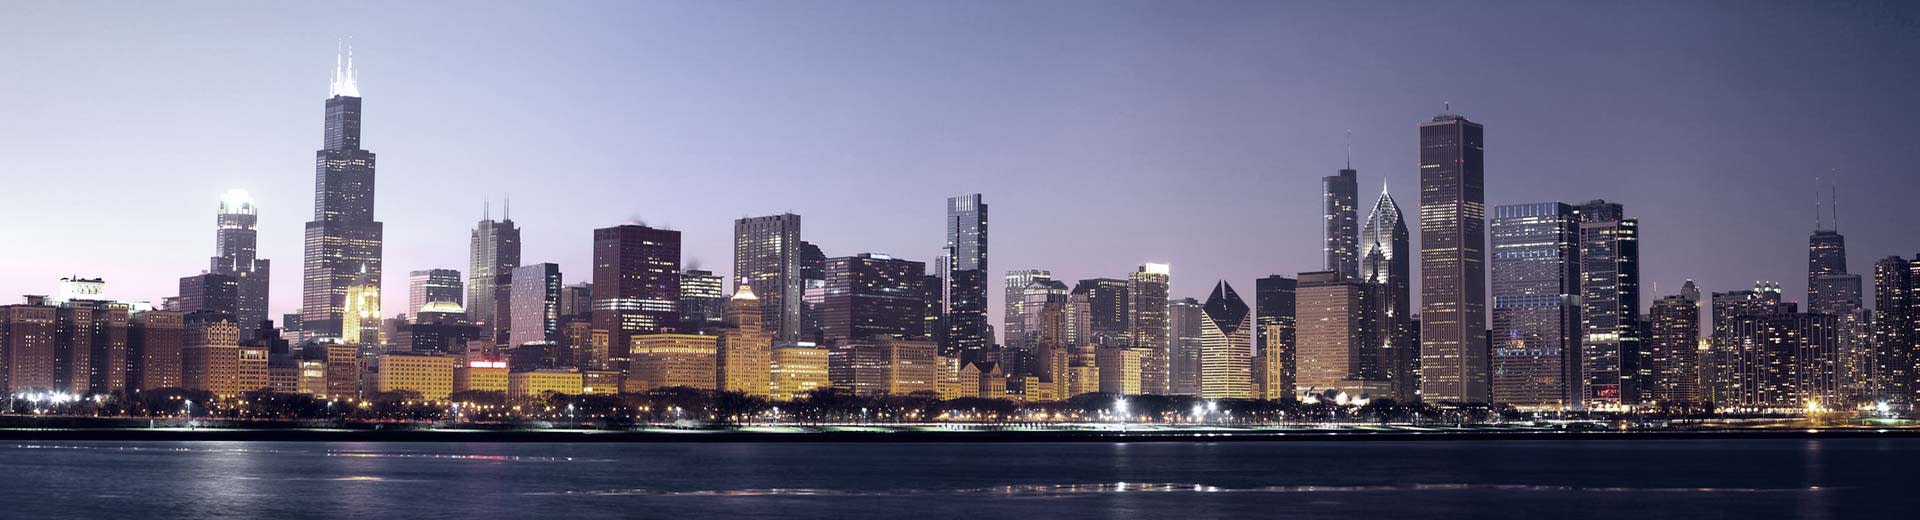 シカゴのスカイラインが上空を照らし、多くの高層ビルがシルエットになっている。